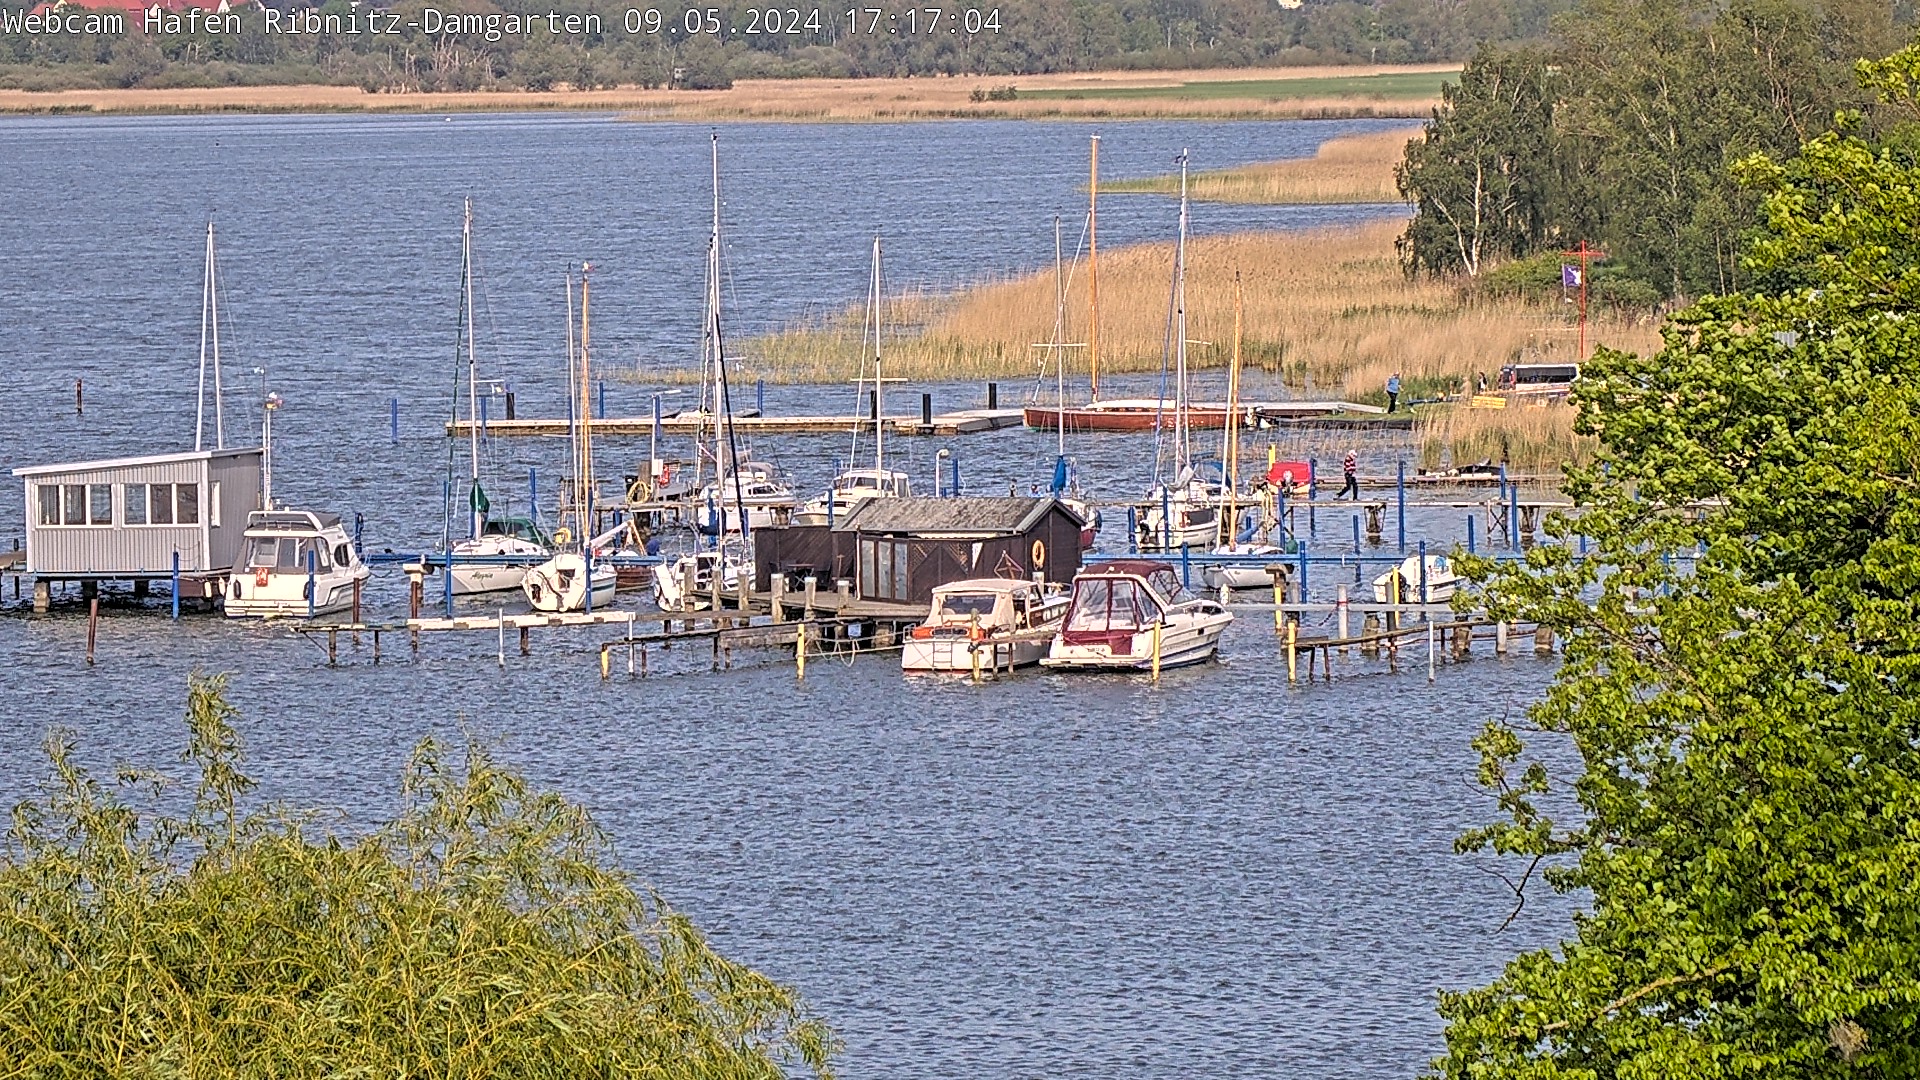 Ribnitz-Damgarten Harbor, Facing North